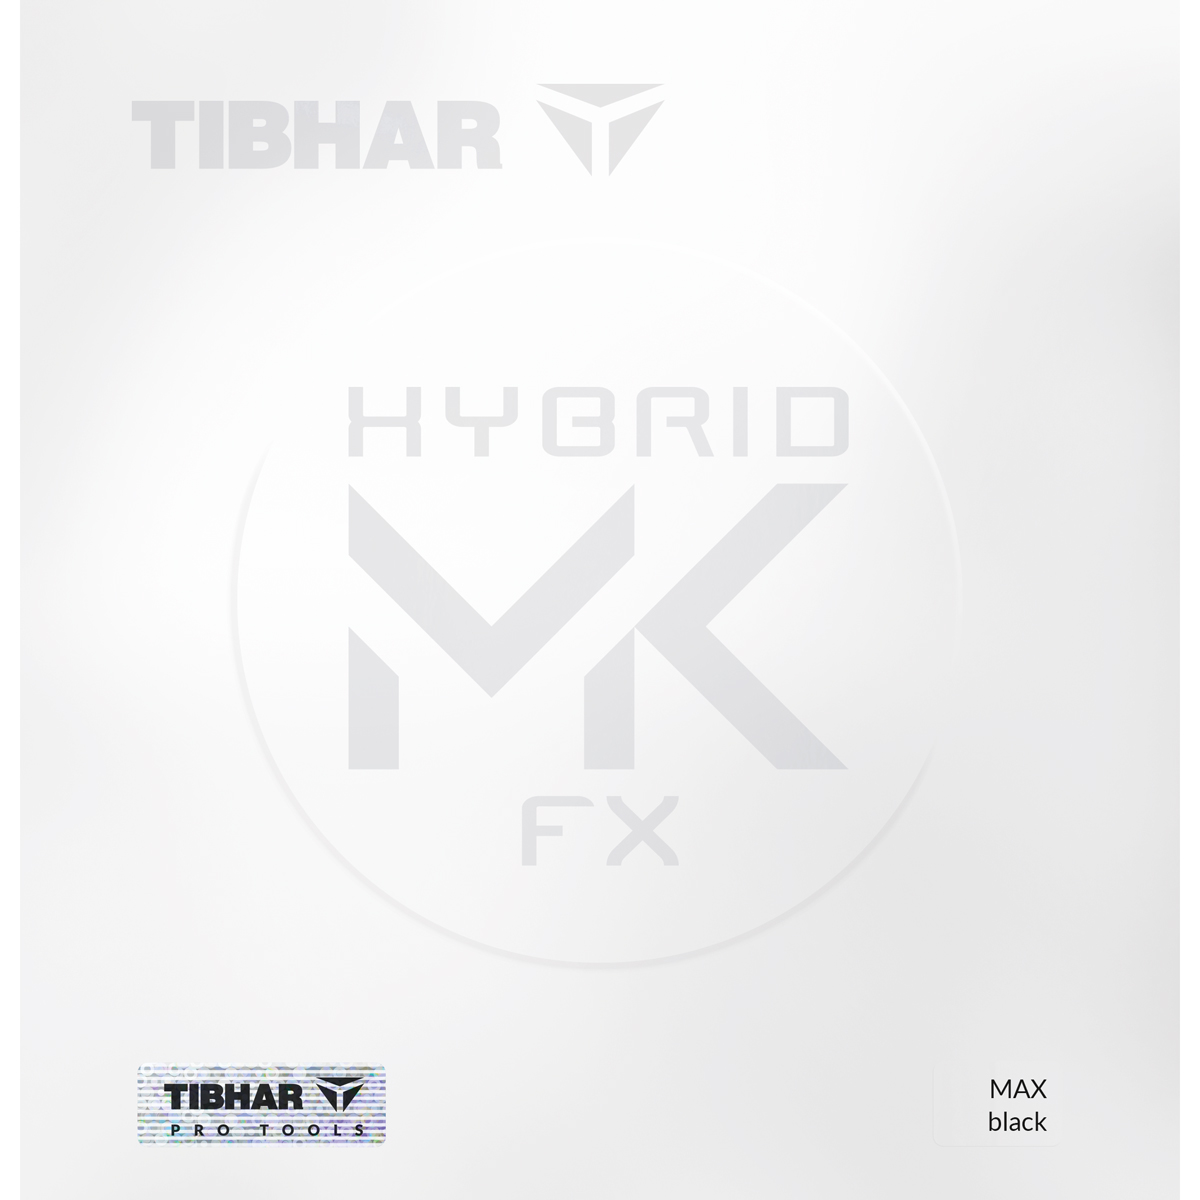 TIBHAR Rubber Hybrid MK FX